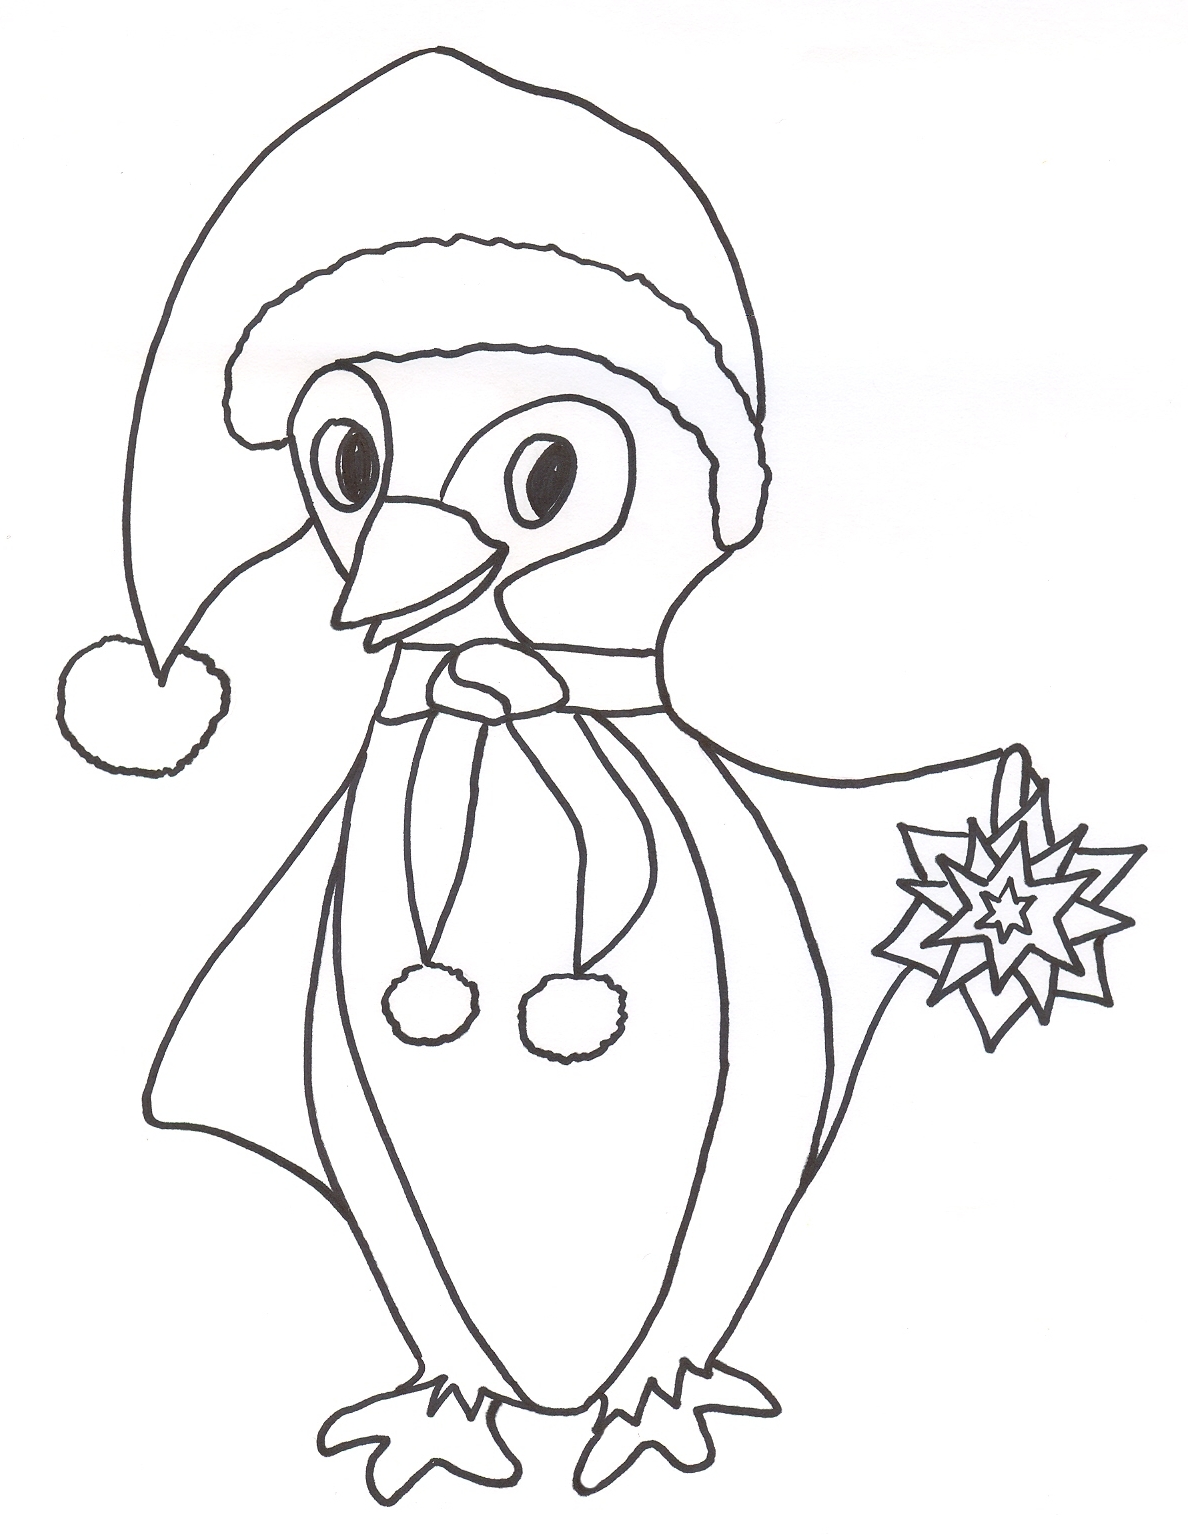 Pinguino natalizio disegno da colorare gratis